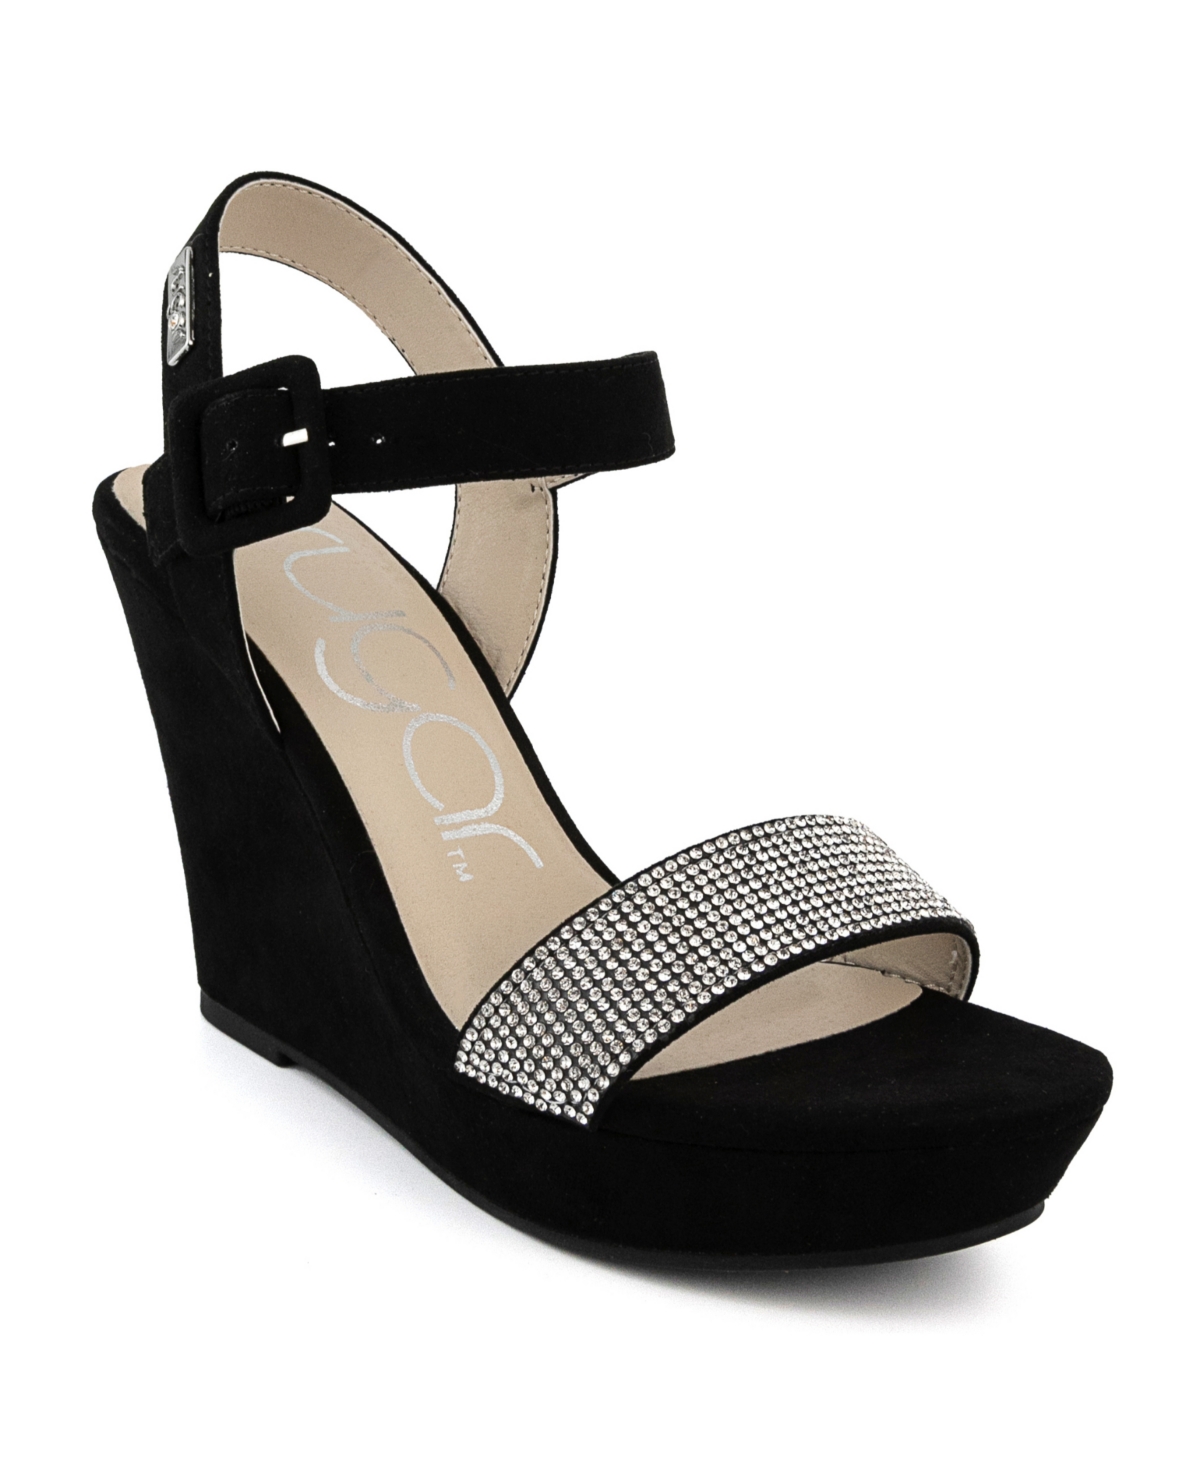 Women's Chili Rhinestone Wedge Sandals - Black